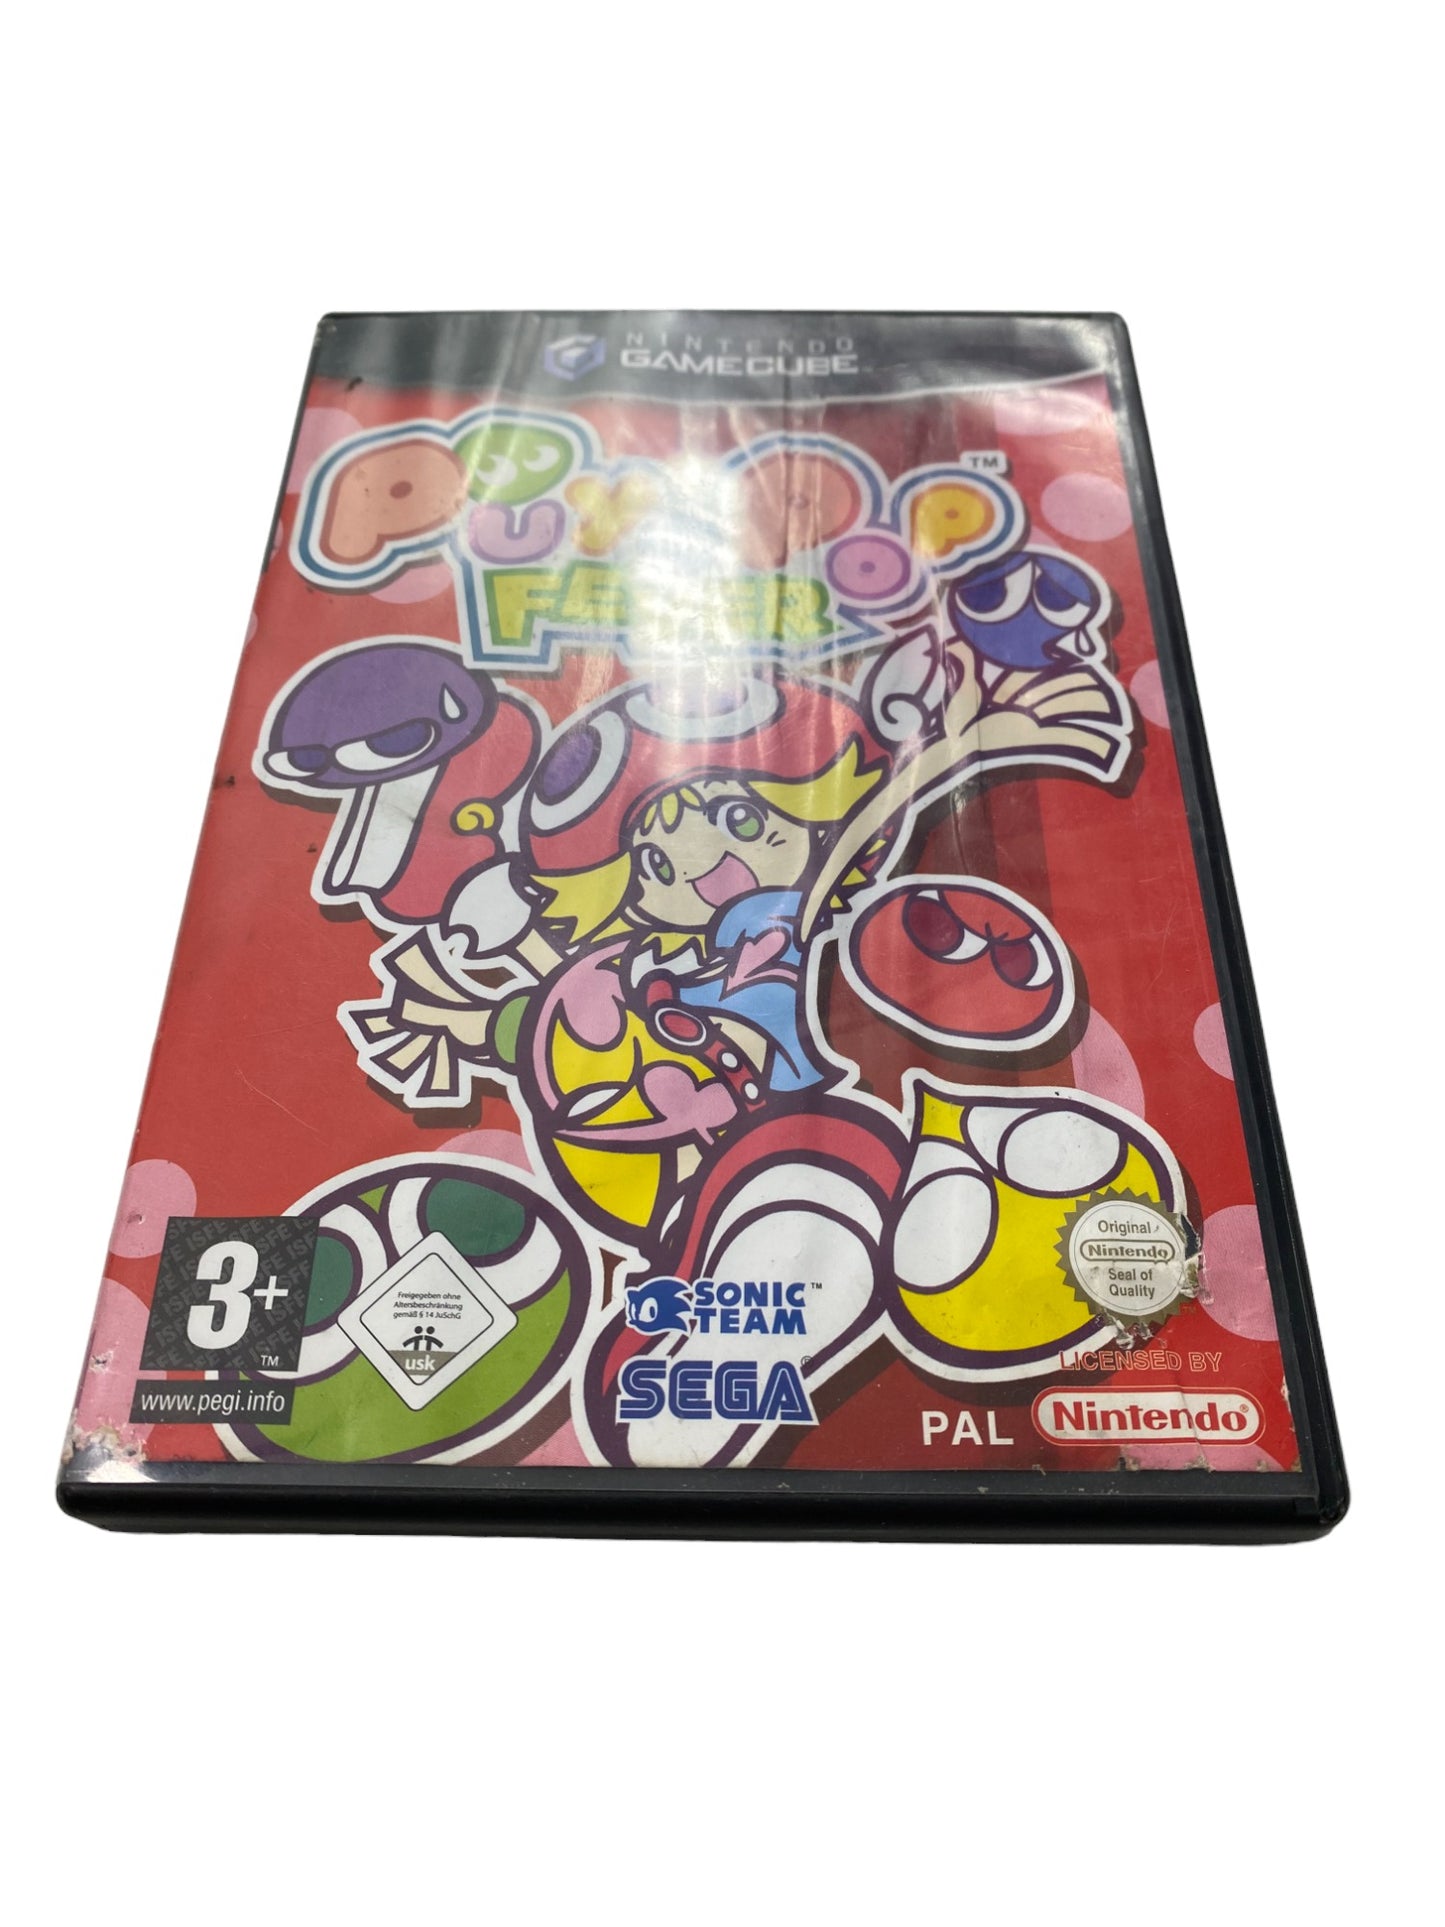 Puyo Pop Fever - Nintendo GameCube